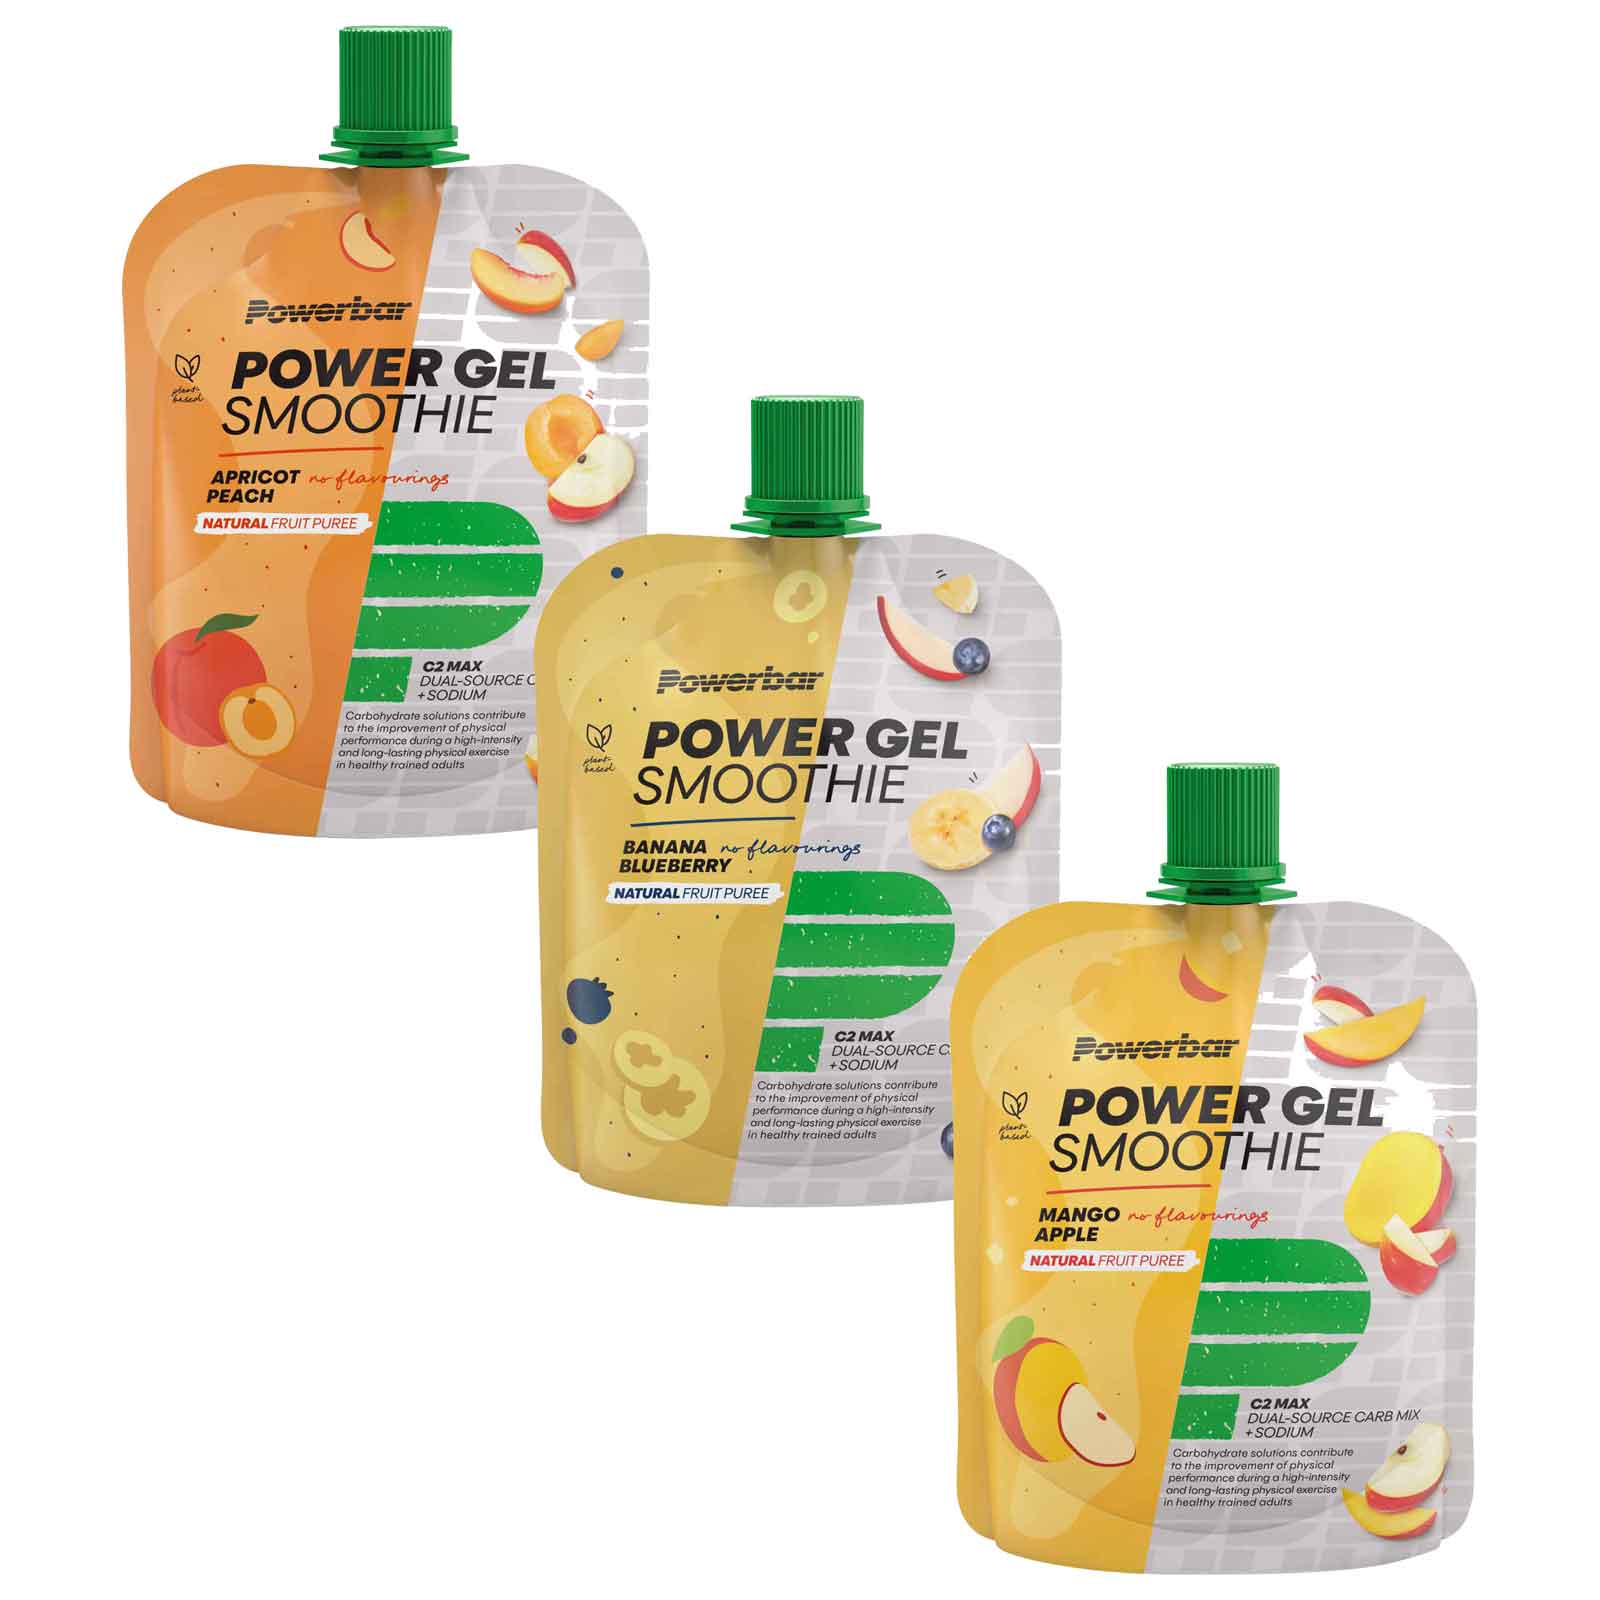 Produktbild von Powerbar PowerGel Smoothie - Fruchtpüree mit Kohlenhydraten - 4x90g